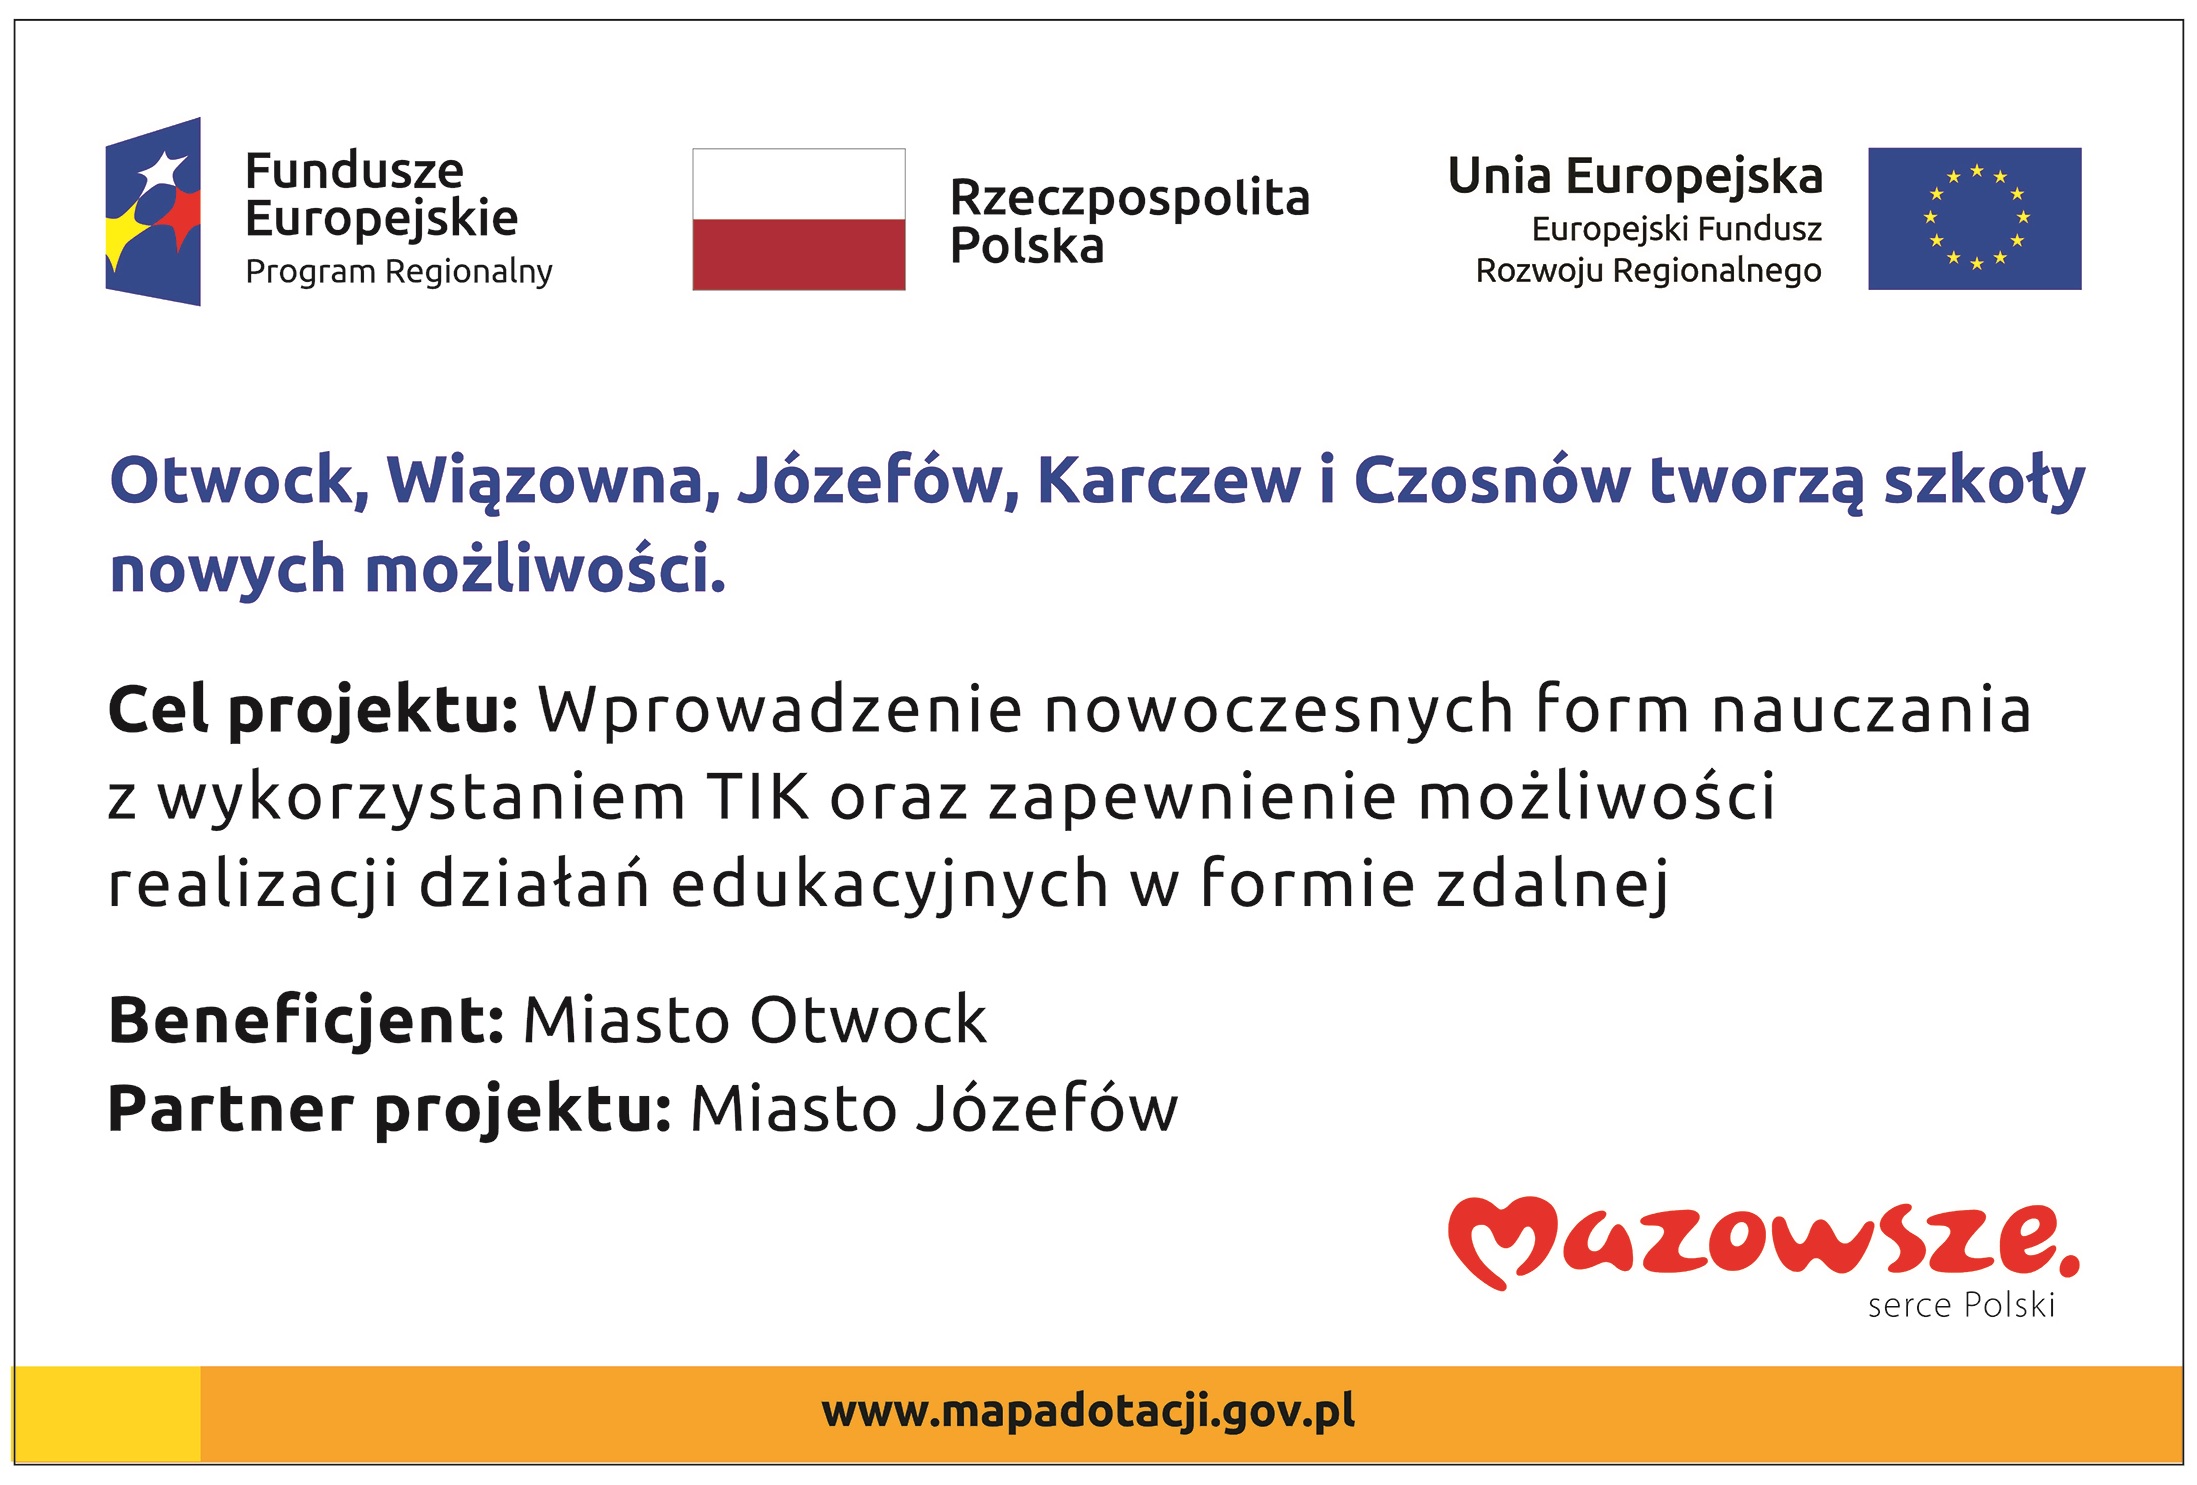 Flaga Polski, logotypy Unii Europejskiej i Funduszy Europejskich. Informacje nt. dofinansowania.